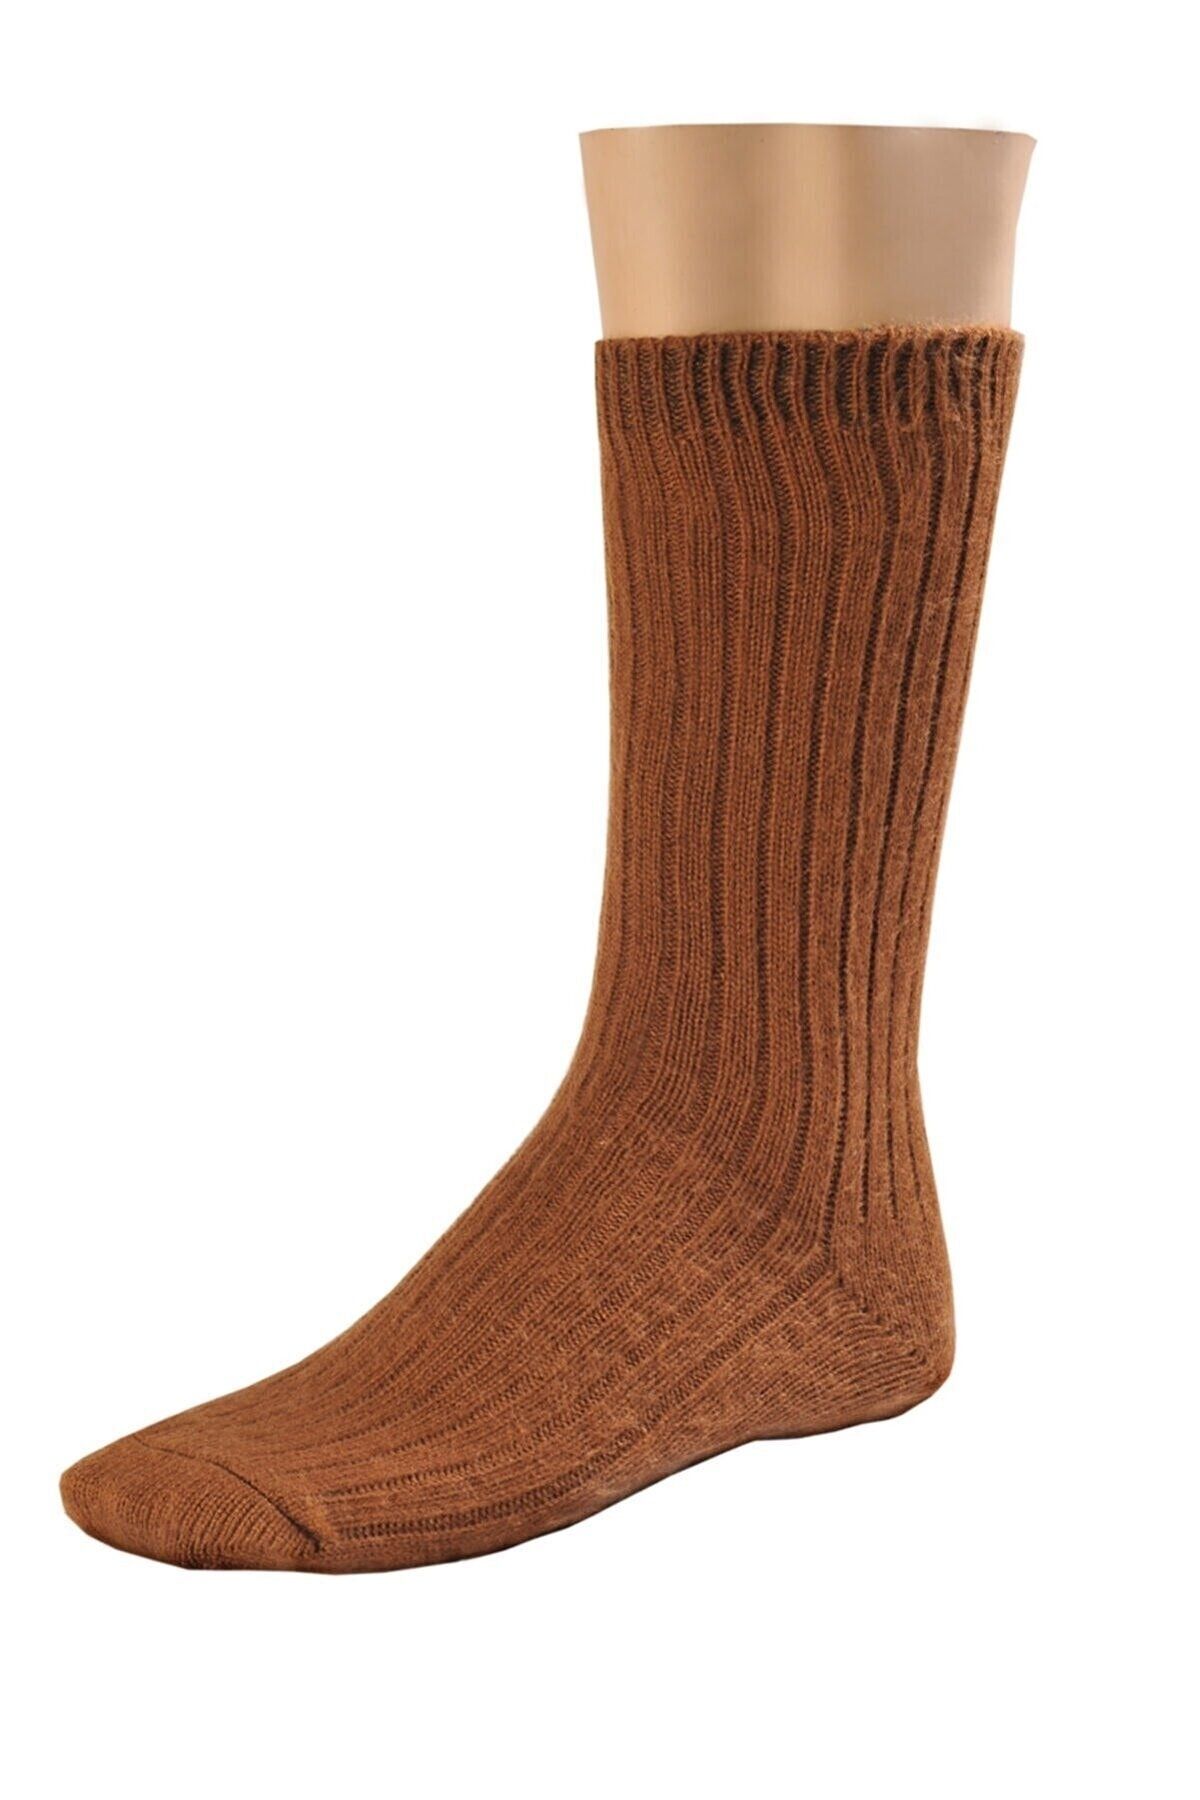 Hedisam Erkek Kışlık Termal Klasik Yün Örgü Çorap 2 Çift